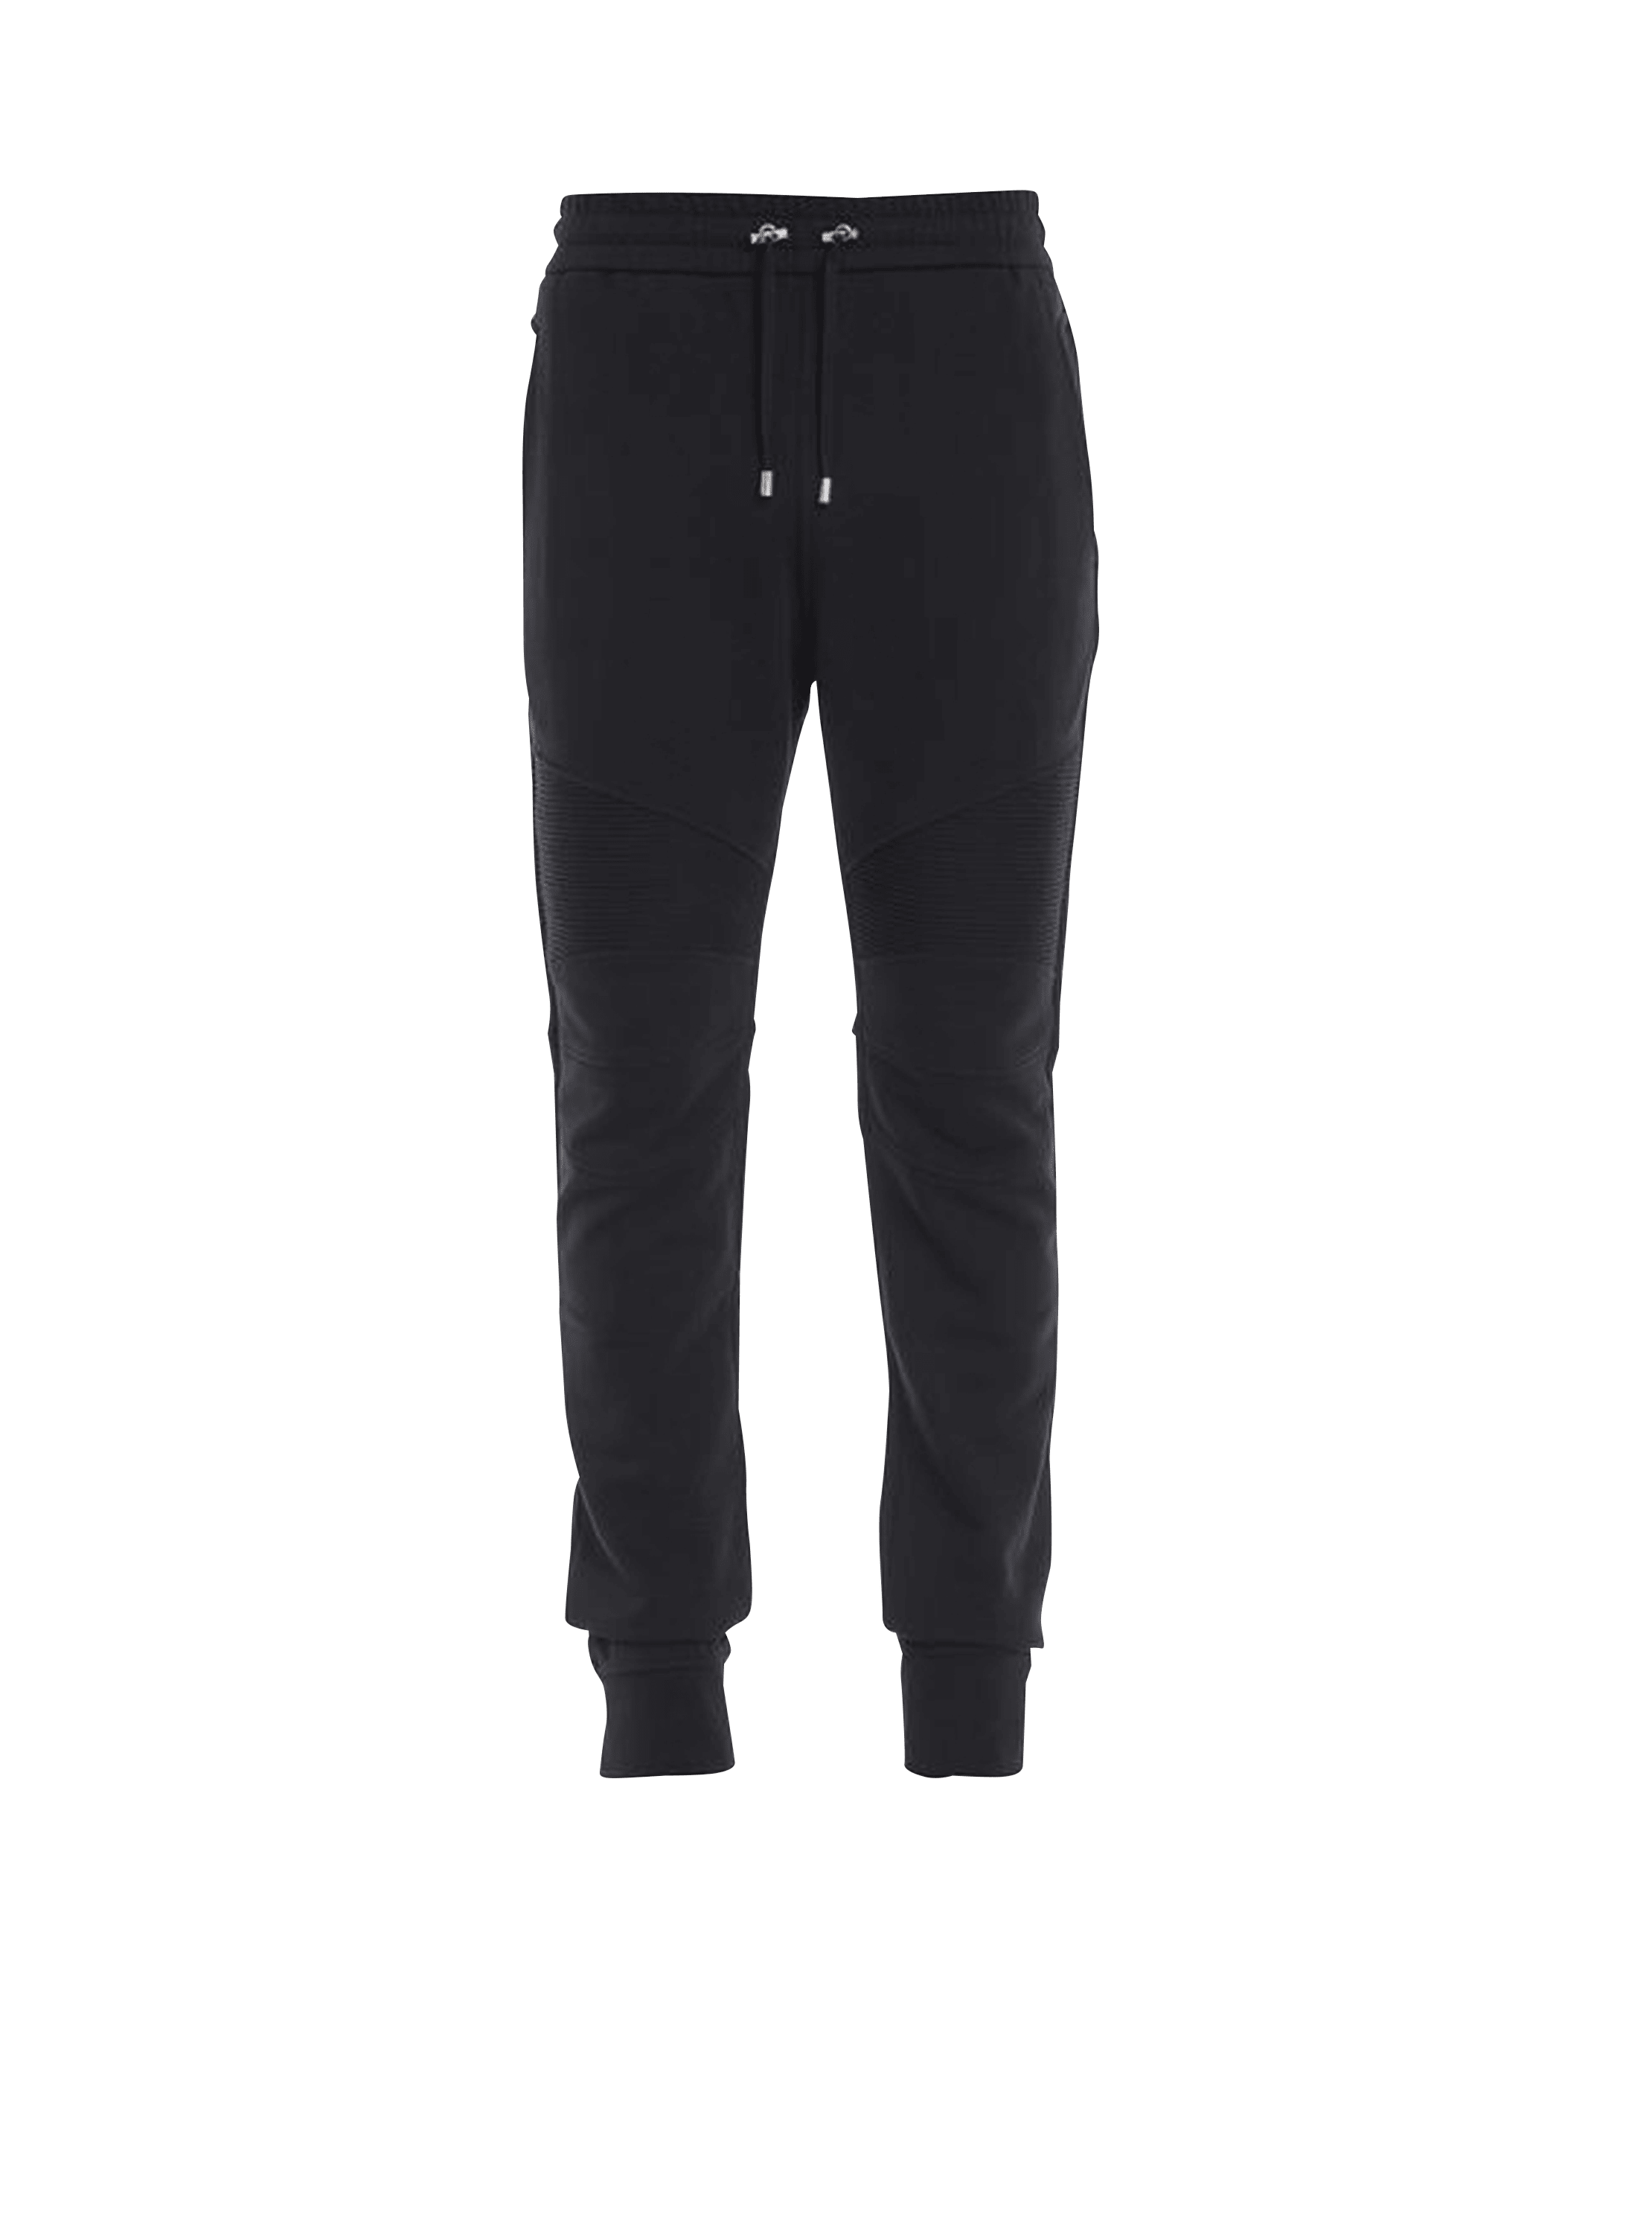 Pantaloni da jogging in cotone con logo Balmain stampato, nero, hi-res